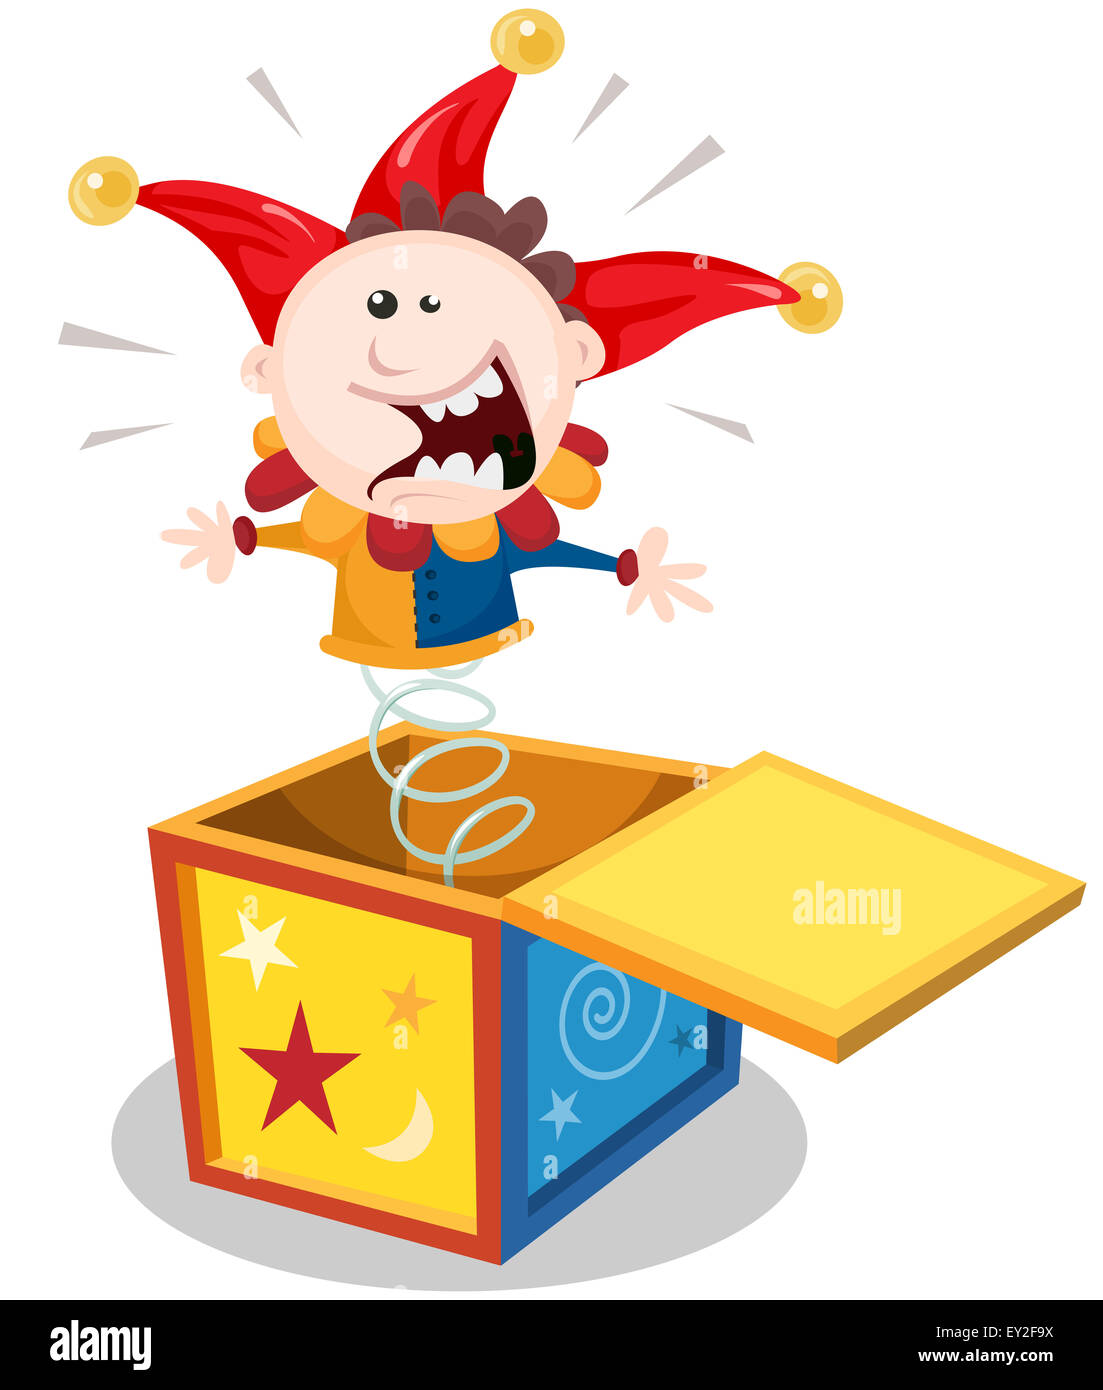 Beispiel für eine lustige Karikatur jack in der Box Puppe Spielzeug  Charakter springen und lächelnd Stockfotografie - Alamy